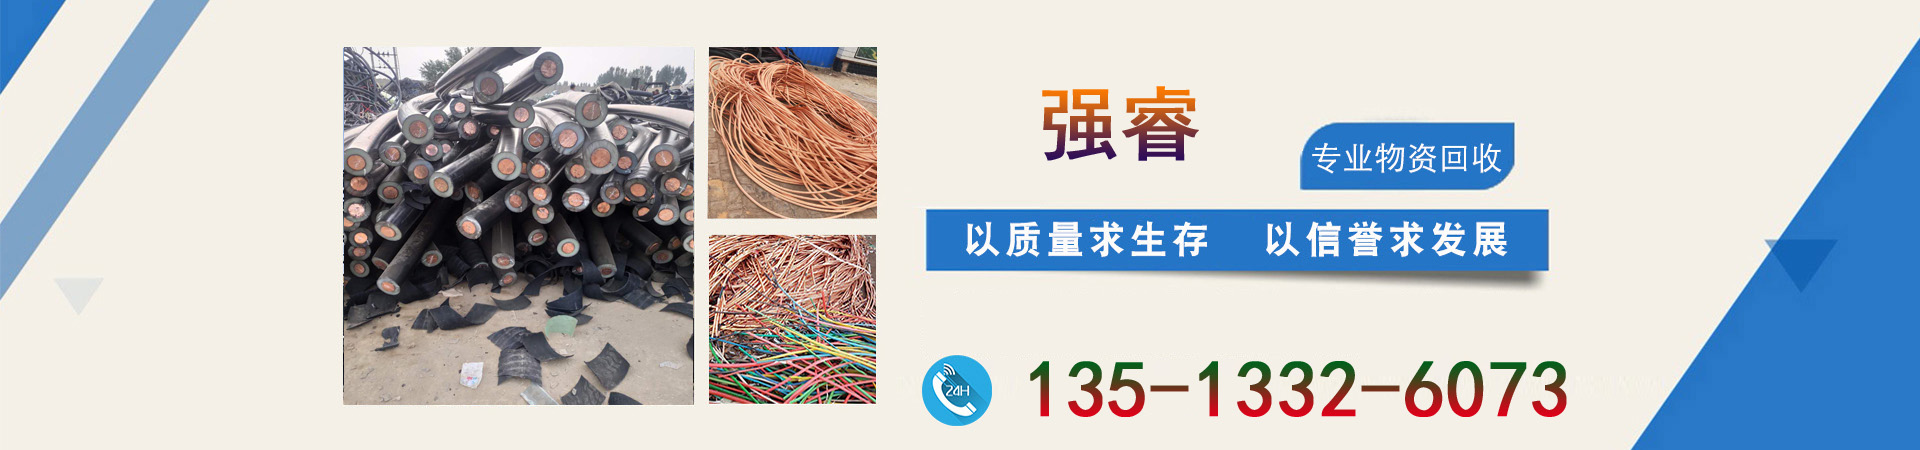 废旧电线电缆回收、贵州本地废旧电线电缆回收、贵州、贵州废旧电线电缆回收